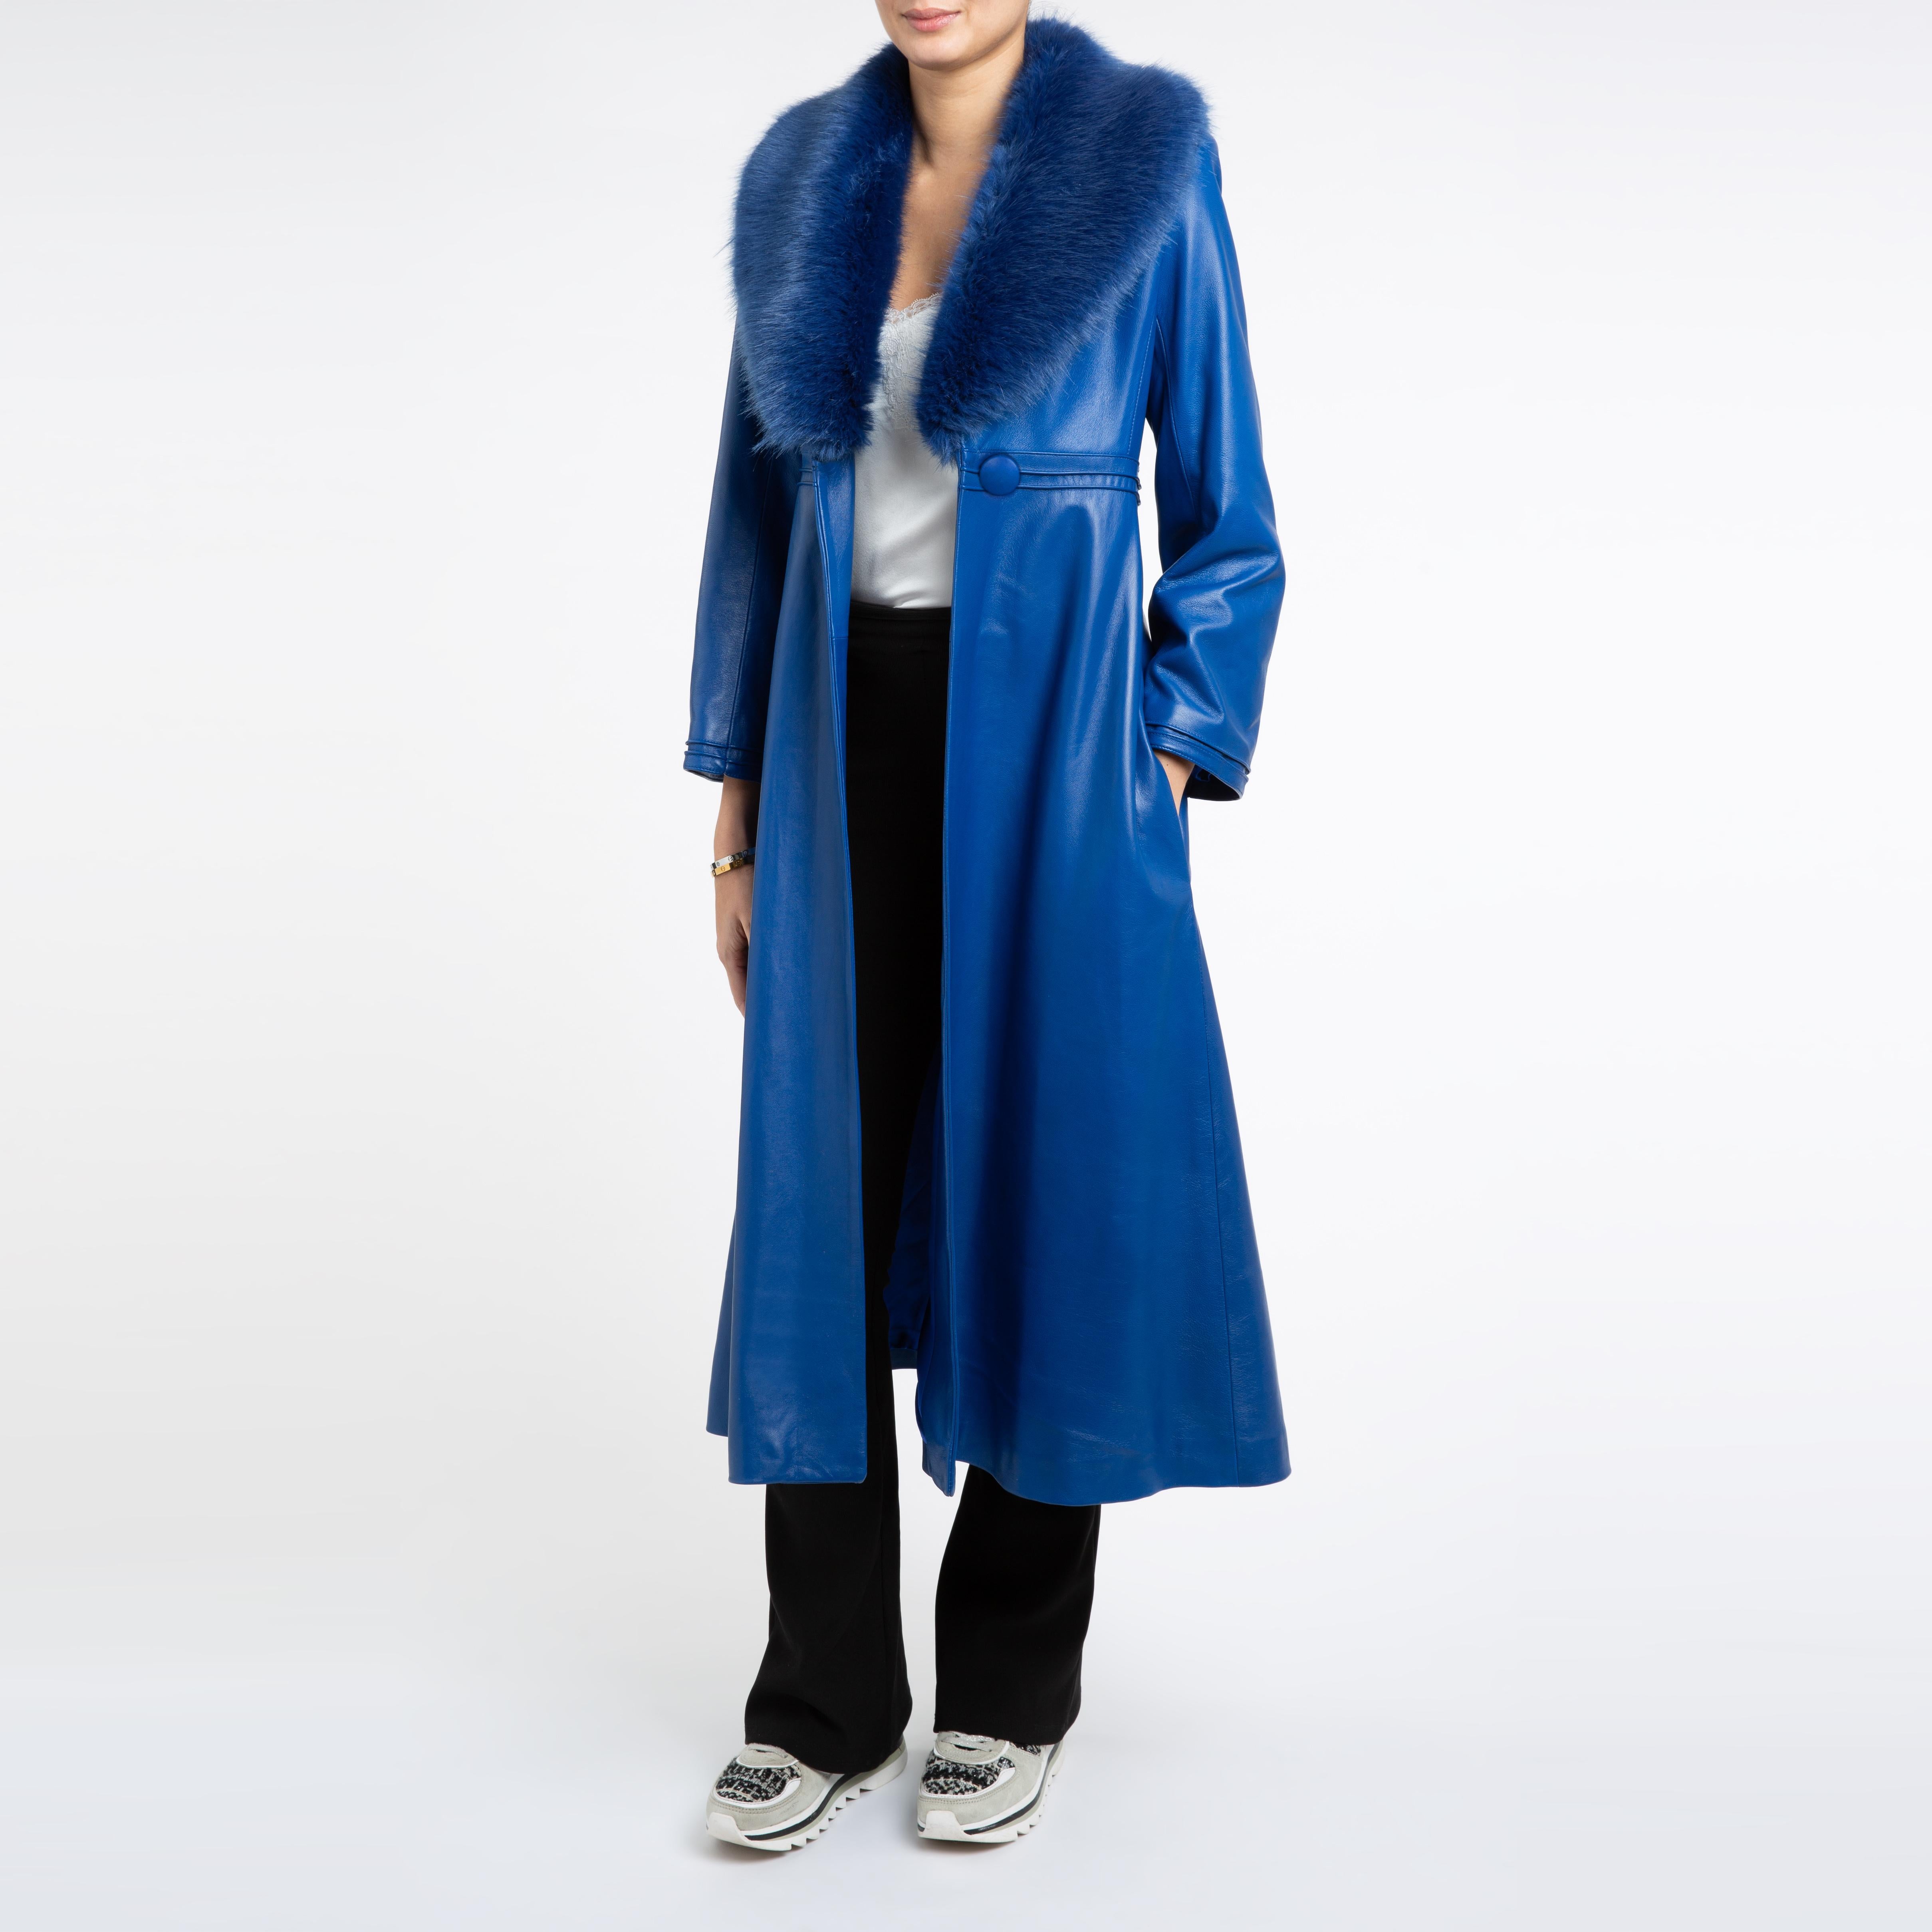 Verheyen London Edward Leather Coat in Blue with Faux Fur - Size uk 12 For Sale 2